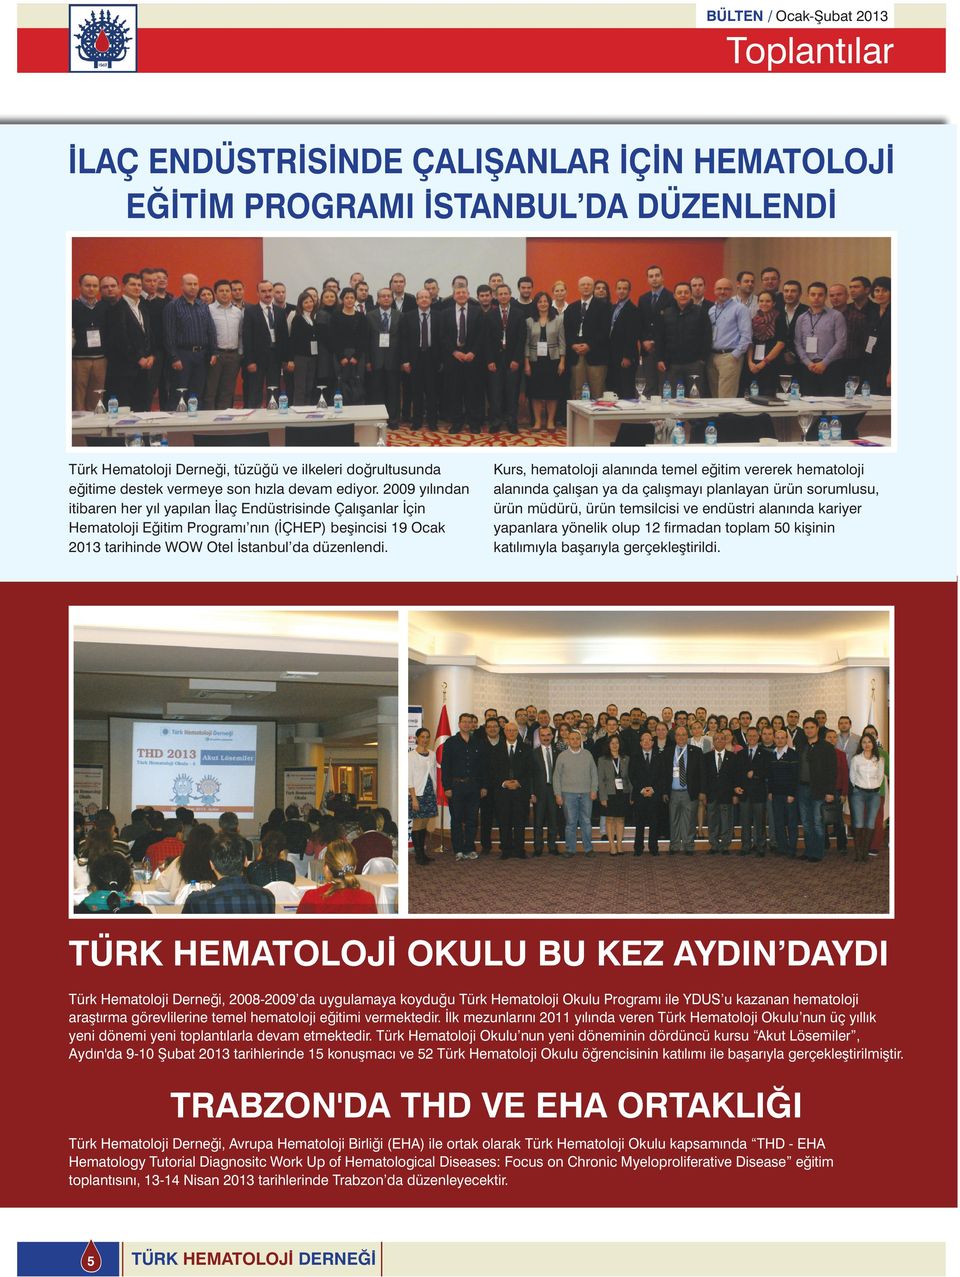 2009 yılından itibaren her yıl yapılan İlaç Endüstrisinde Çalışanlar İçin Hematoloji Eğitim Programı nın (İÇHEP) beşincisi 19 Ocak 2013 tarihinde WOW Otel İstanbul da düzenlendi.